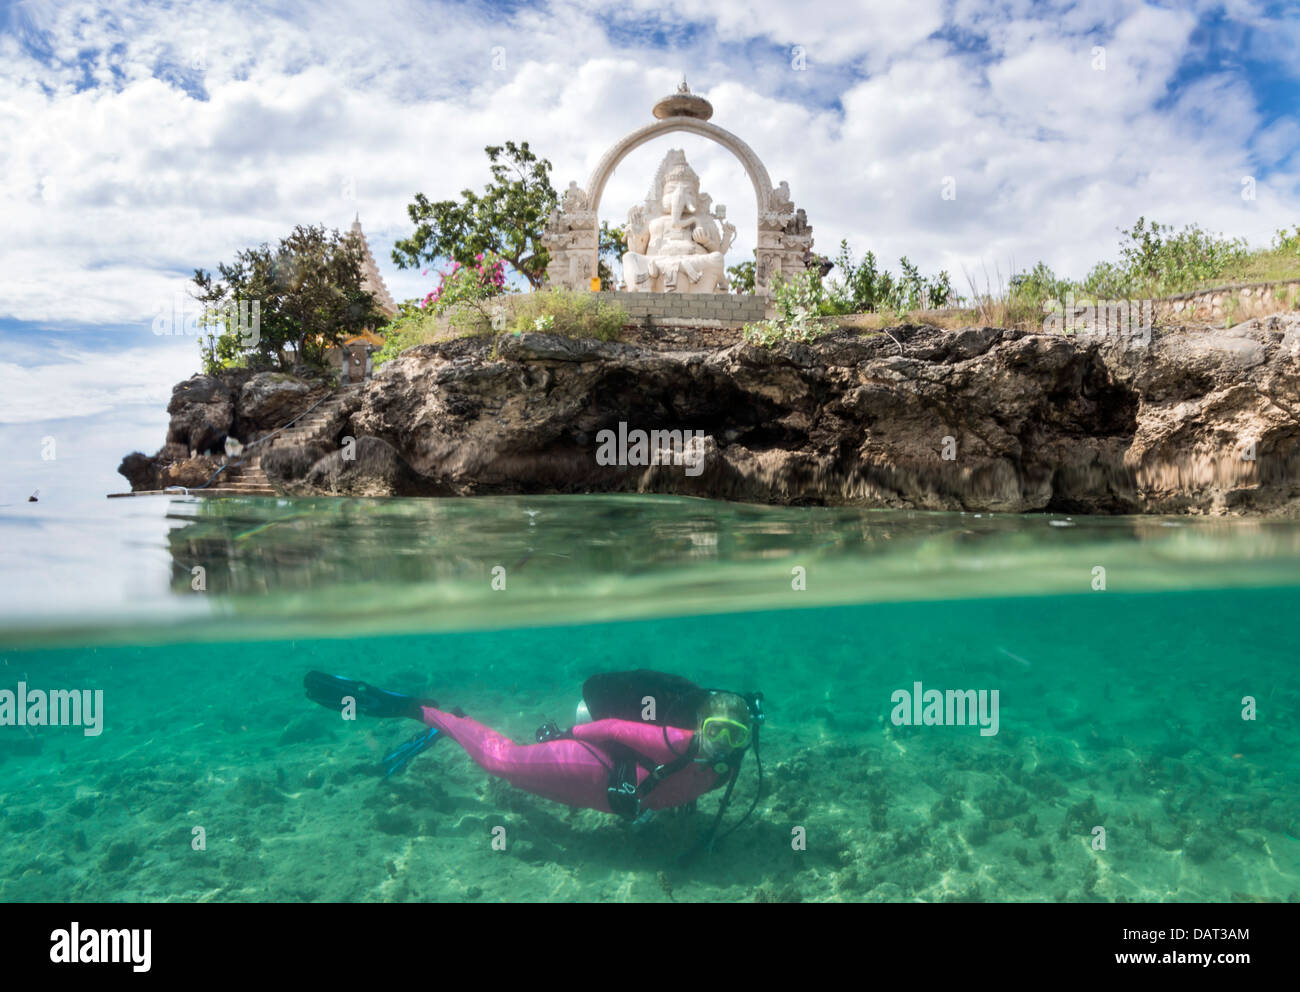 A livello diviso Vista del biondo sub femmina esplorazione subacquea al fianco di isola tropicale con tempio in background Foto Stock